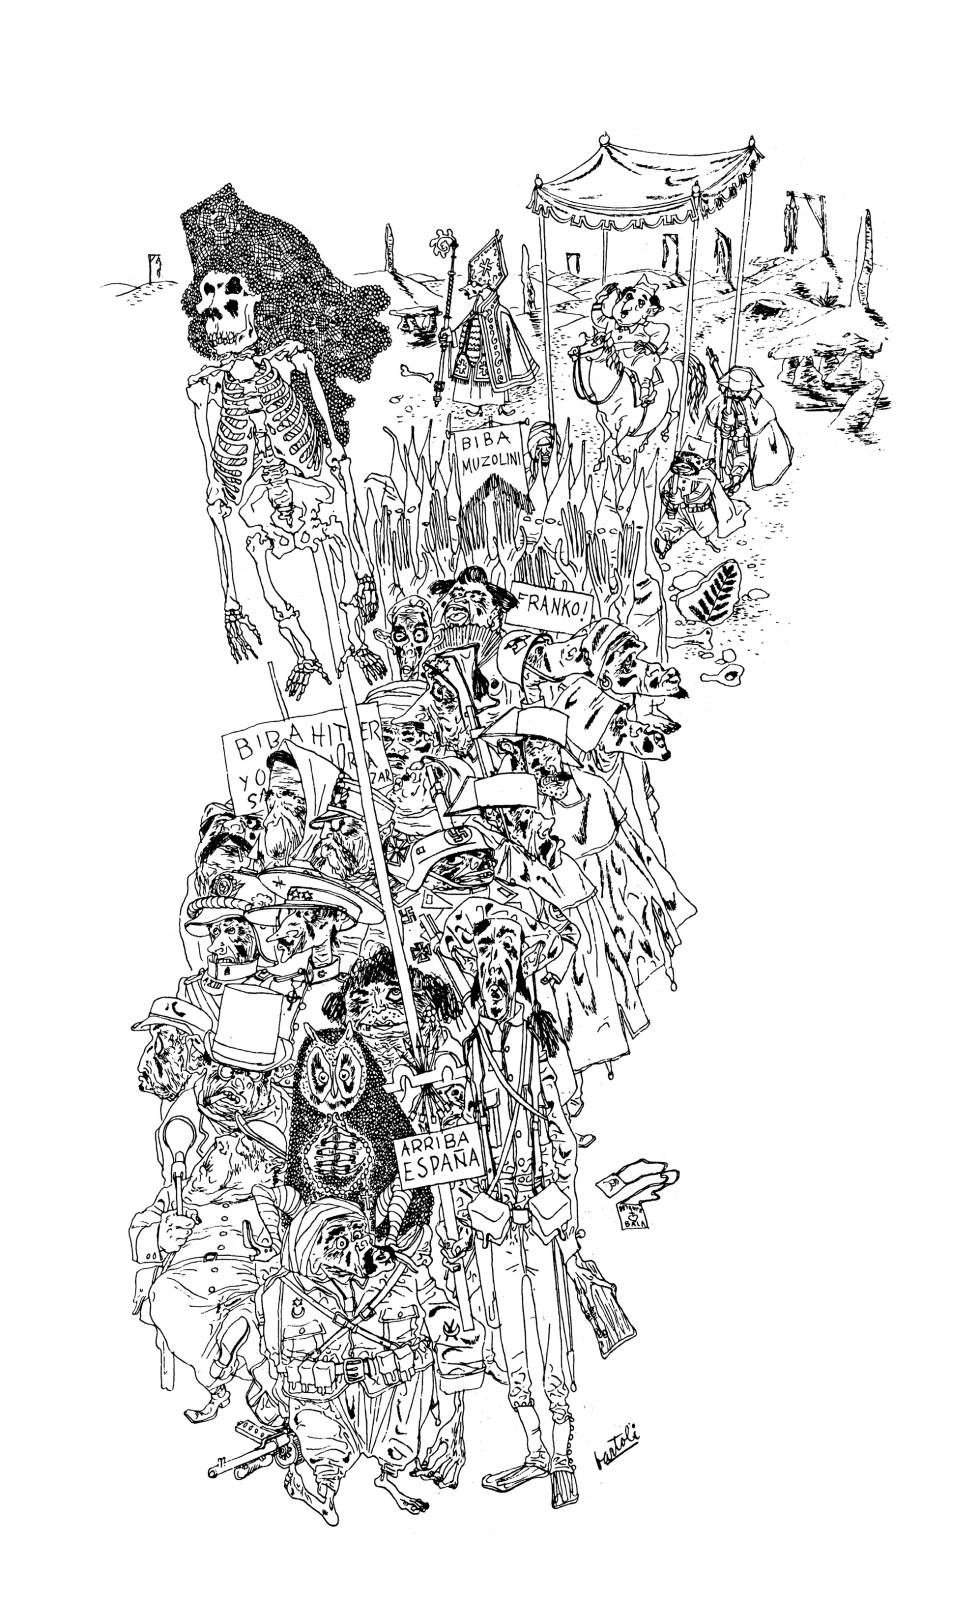 Todo el antifranquismo y el anticlericalismo de Josep Bartoli, reunidos en una ilustración.